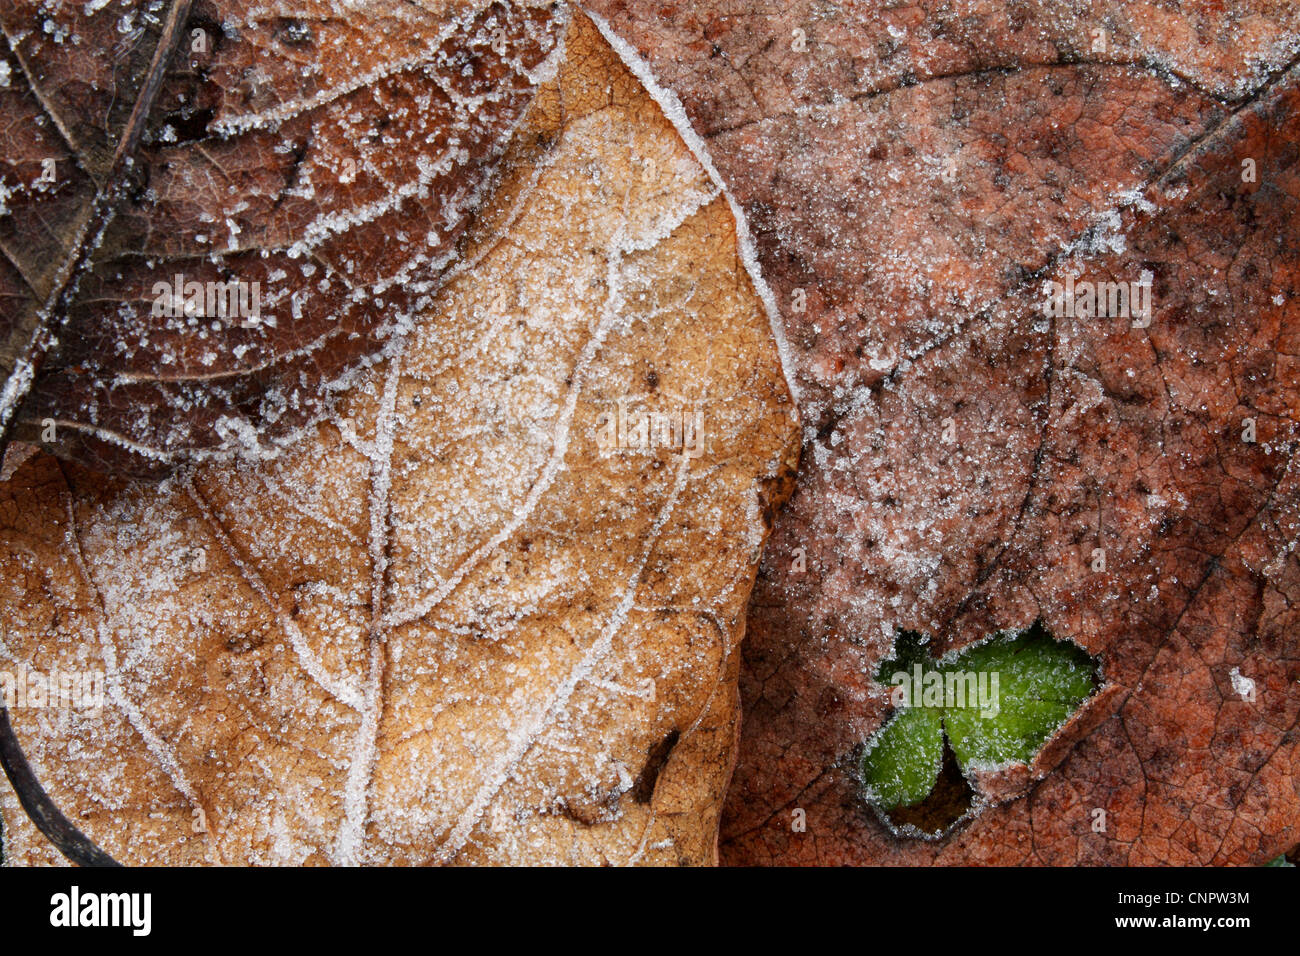 Una composición de hojas congelada con un trébol (congelados) en el ángulo sudoriental tomadas en un frío día de invierno. Foto de stock